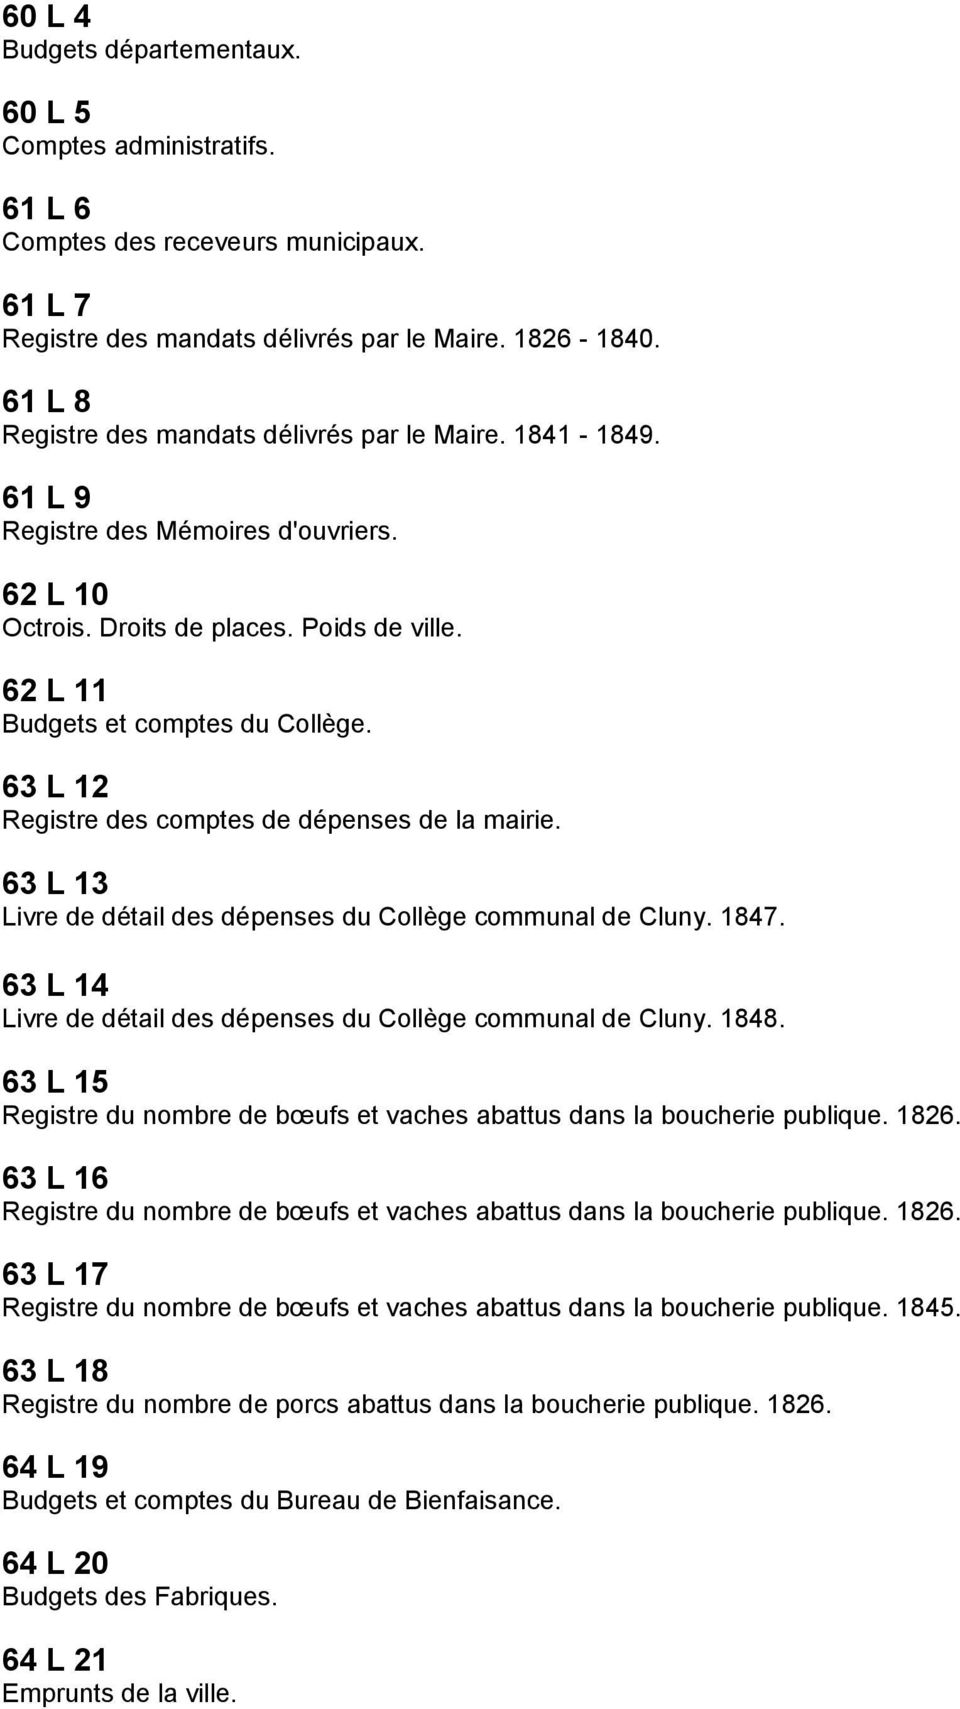 63 L 12 Registre des comptes de dépenses de la mairie. 63 L 13 Livre de détail des dépenses du Collège communal de Cluny. 1847. 63 L 14 Livre de détail des dépenses du Collège communal de Cluny. 1848.